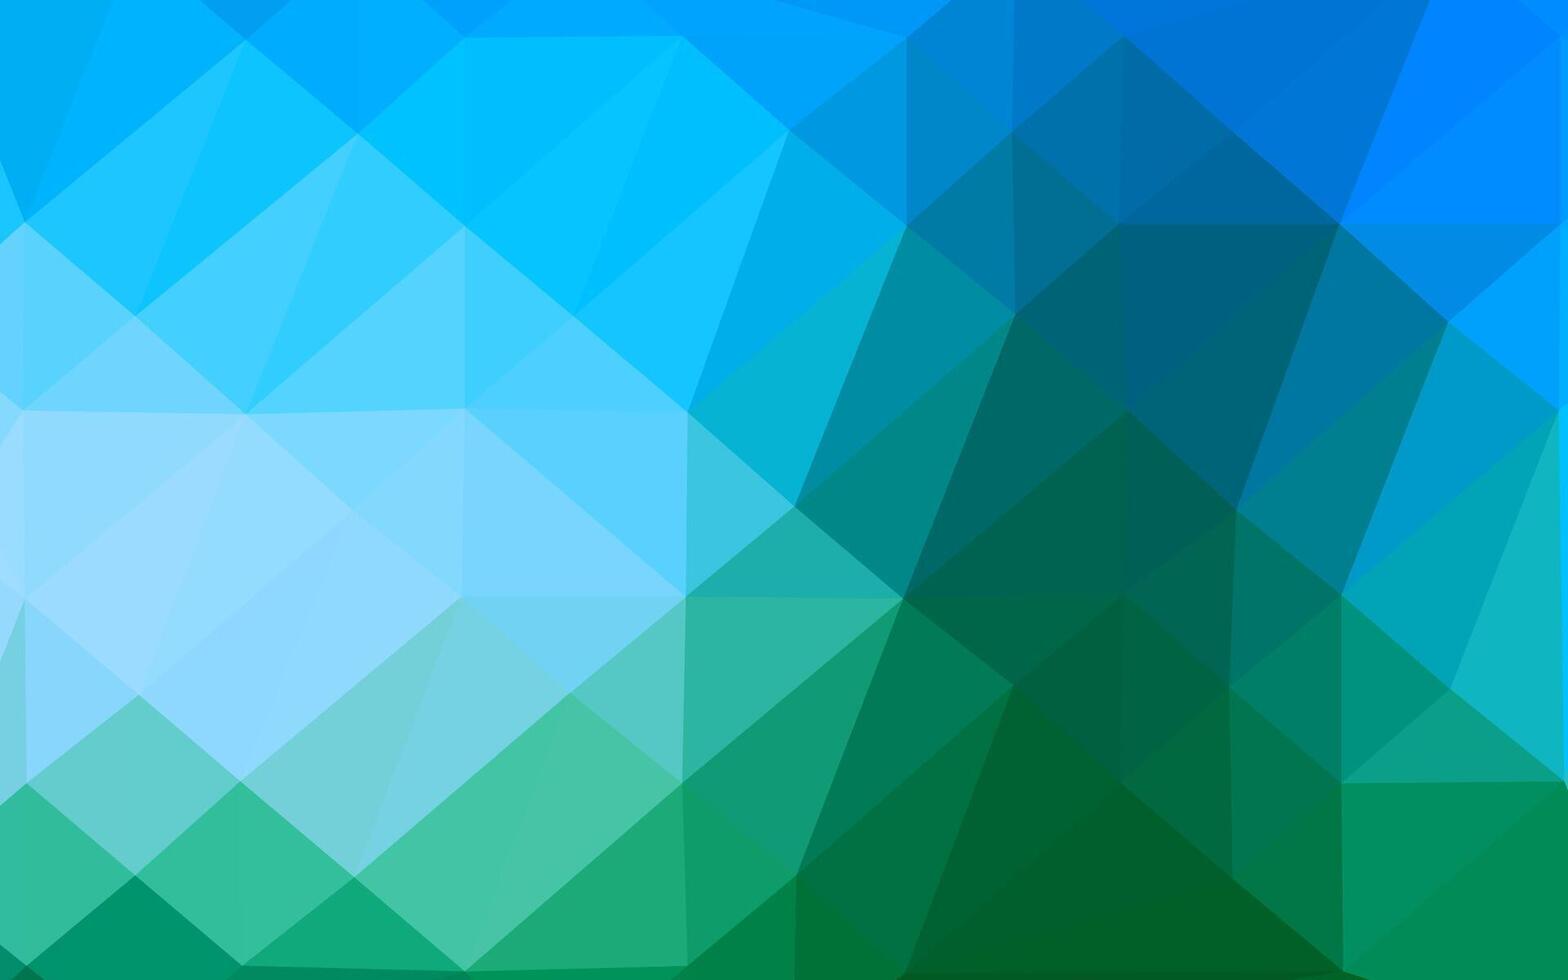 ljusblå, grön vektor lysande triangulär bakgrund.